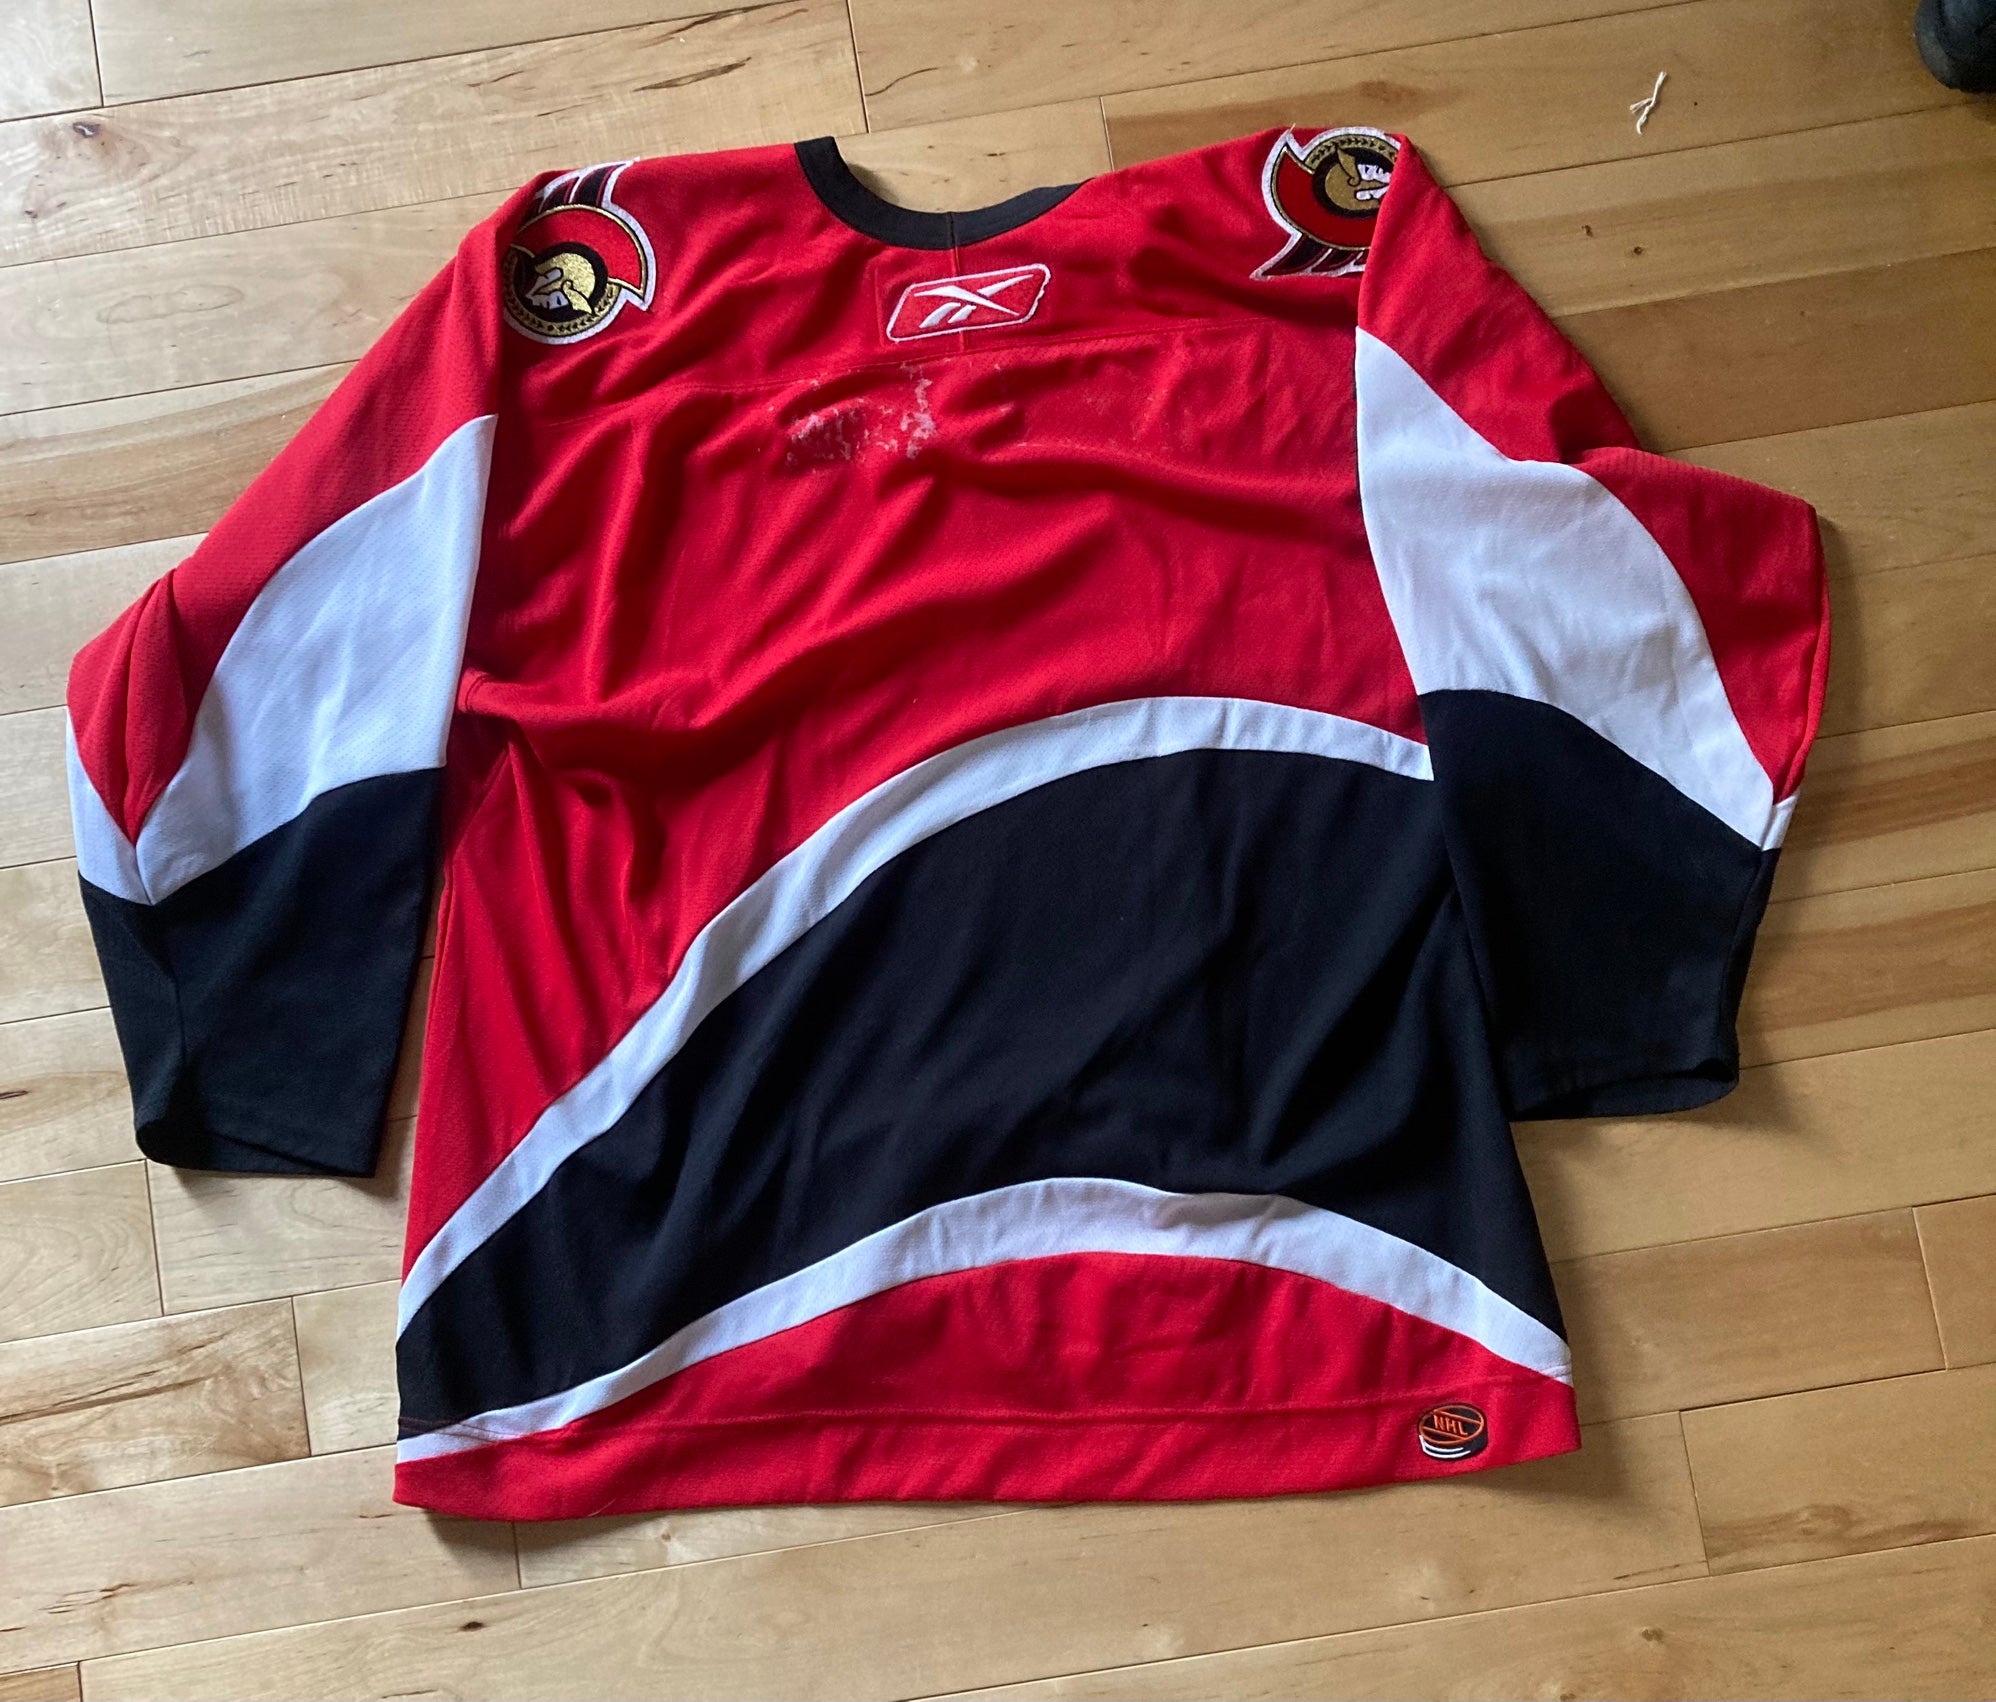 Nhl Ottawa Senators Jersey - Xl : Target